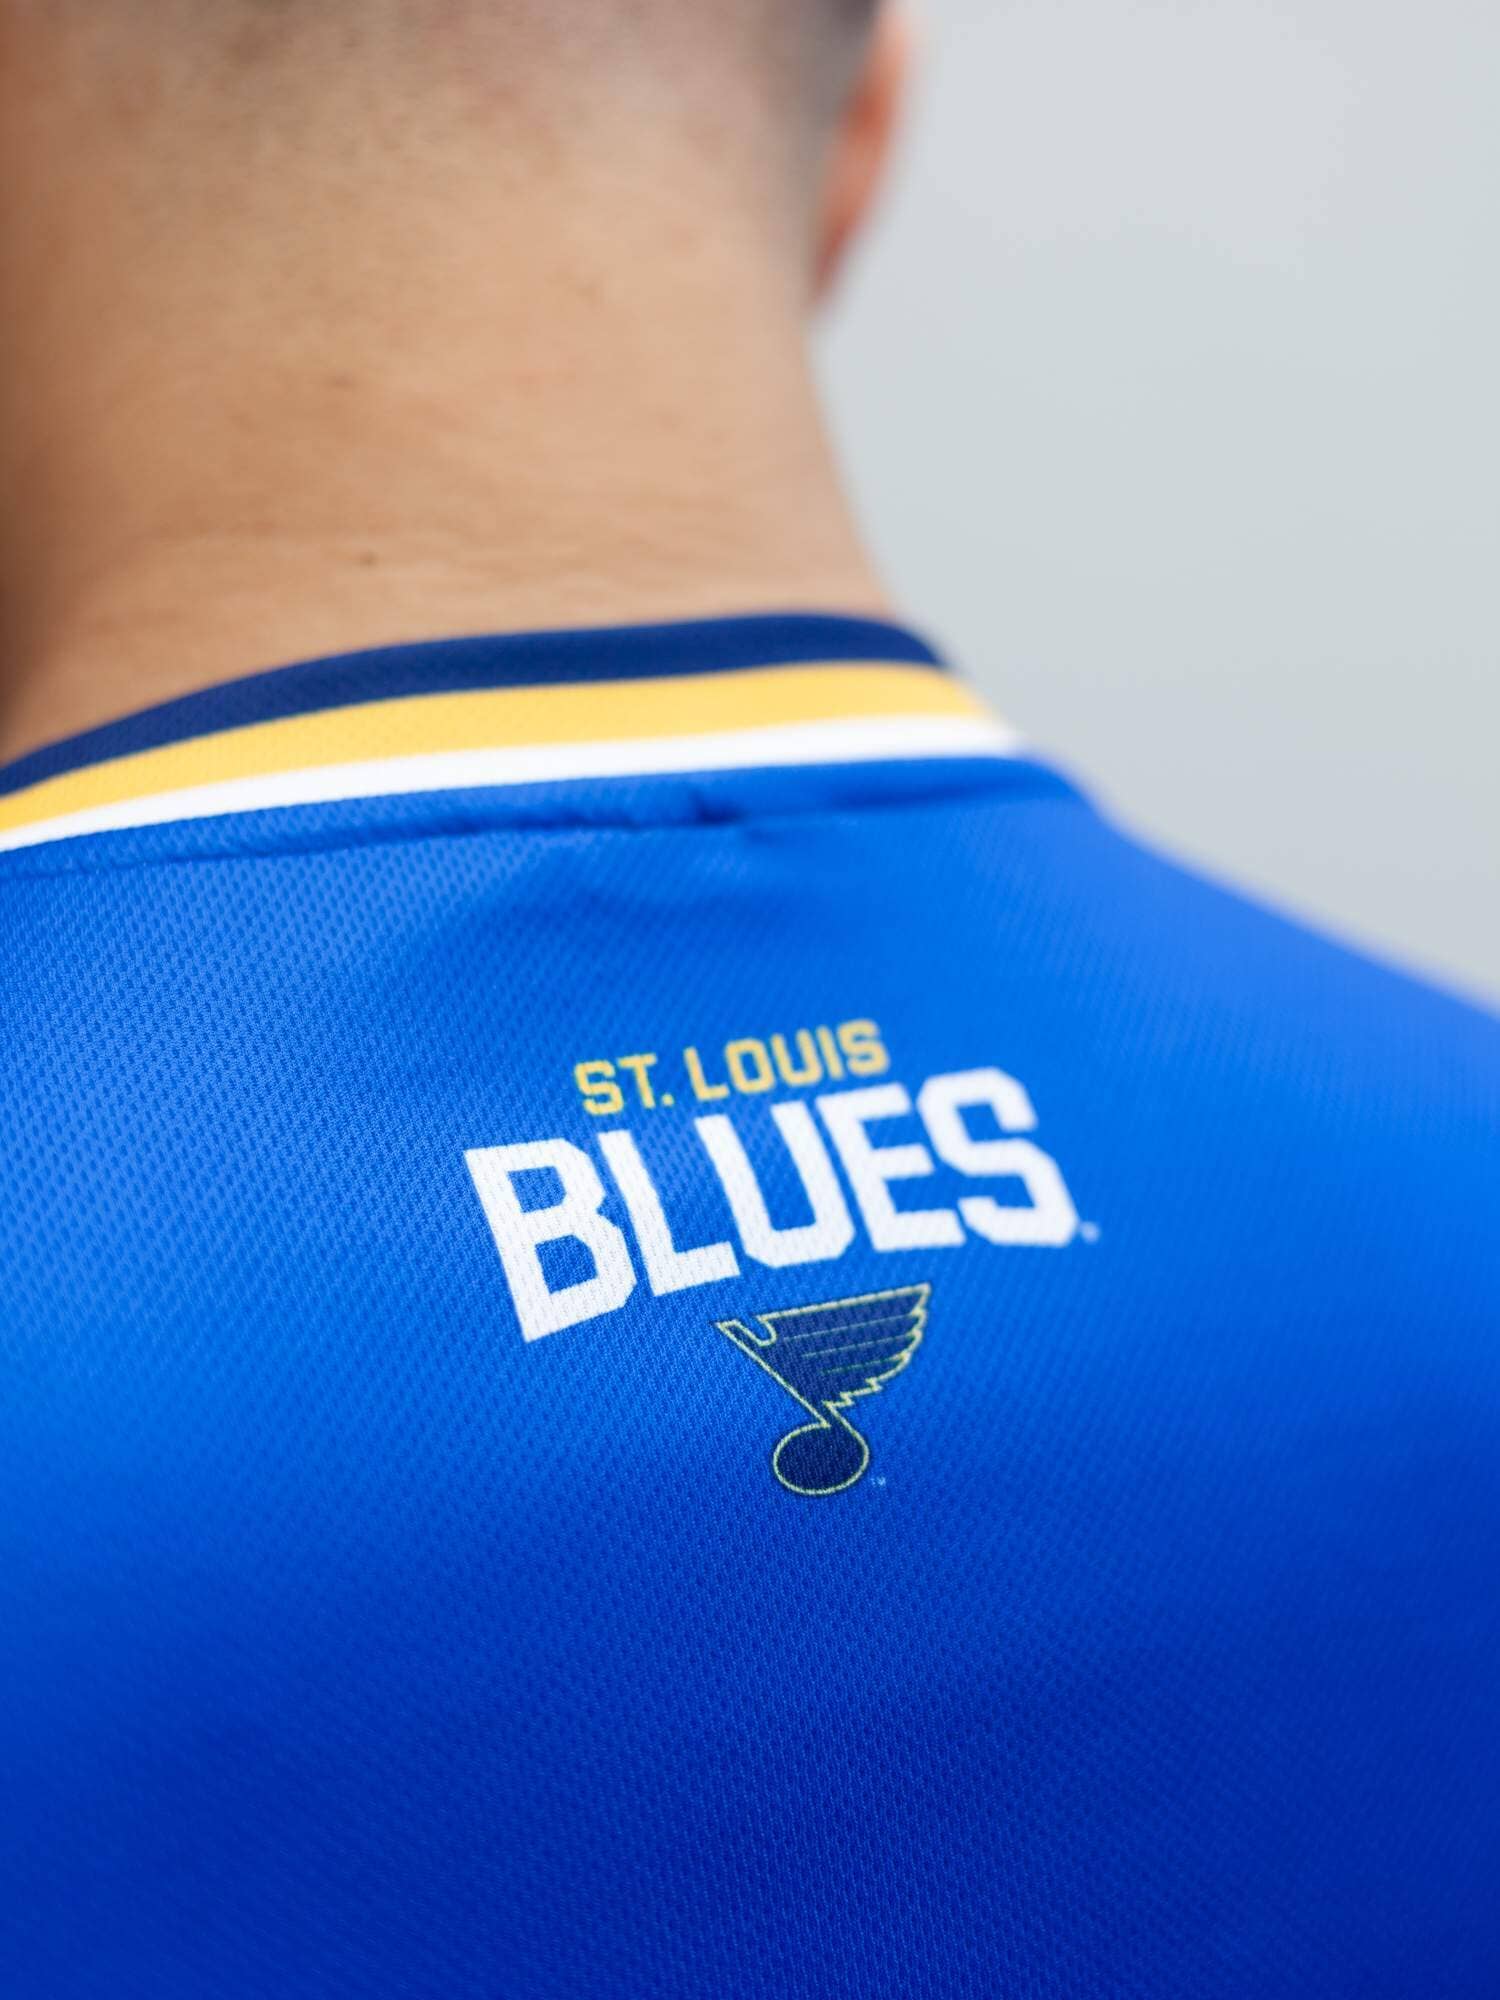 St. Louis Blues Gear, Blues Jerseys, St. Louis Blues Clothing